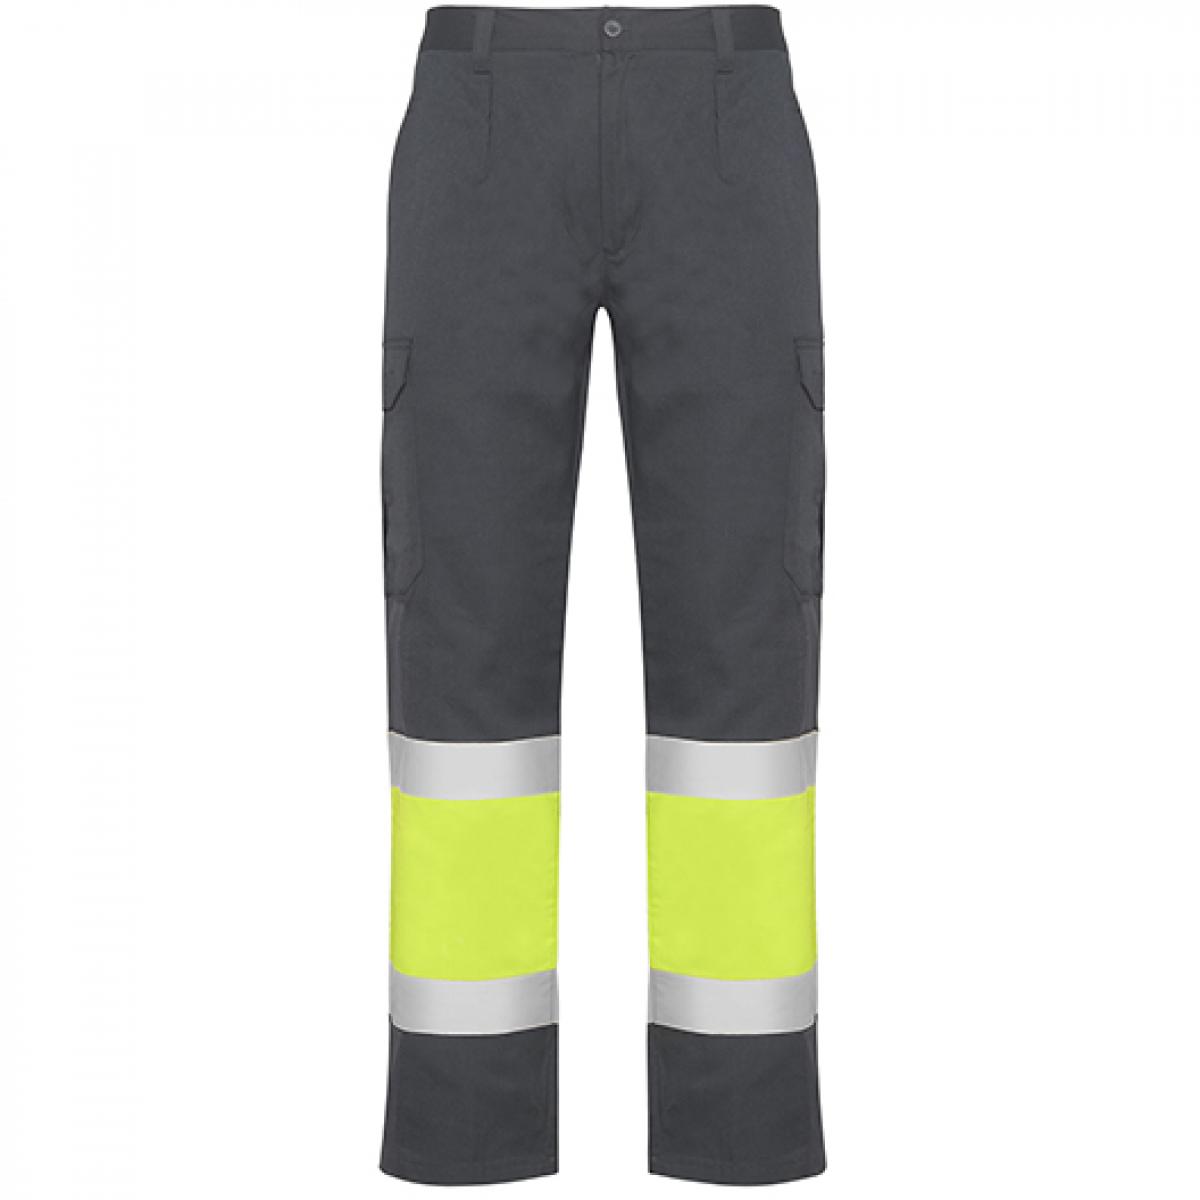 Hersteller: Roly Workwear Herstellernummer: HV9300 Artikelbezeichnung: Naos Hi-Viz Trousers - Arbeitshose mit Reflektionsstreifen Farbe: Lead 23/Fluor Yellow 221